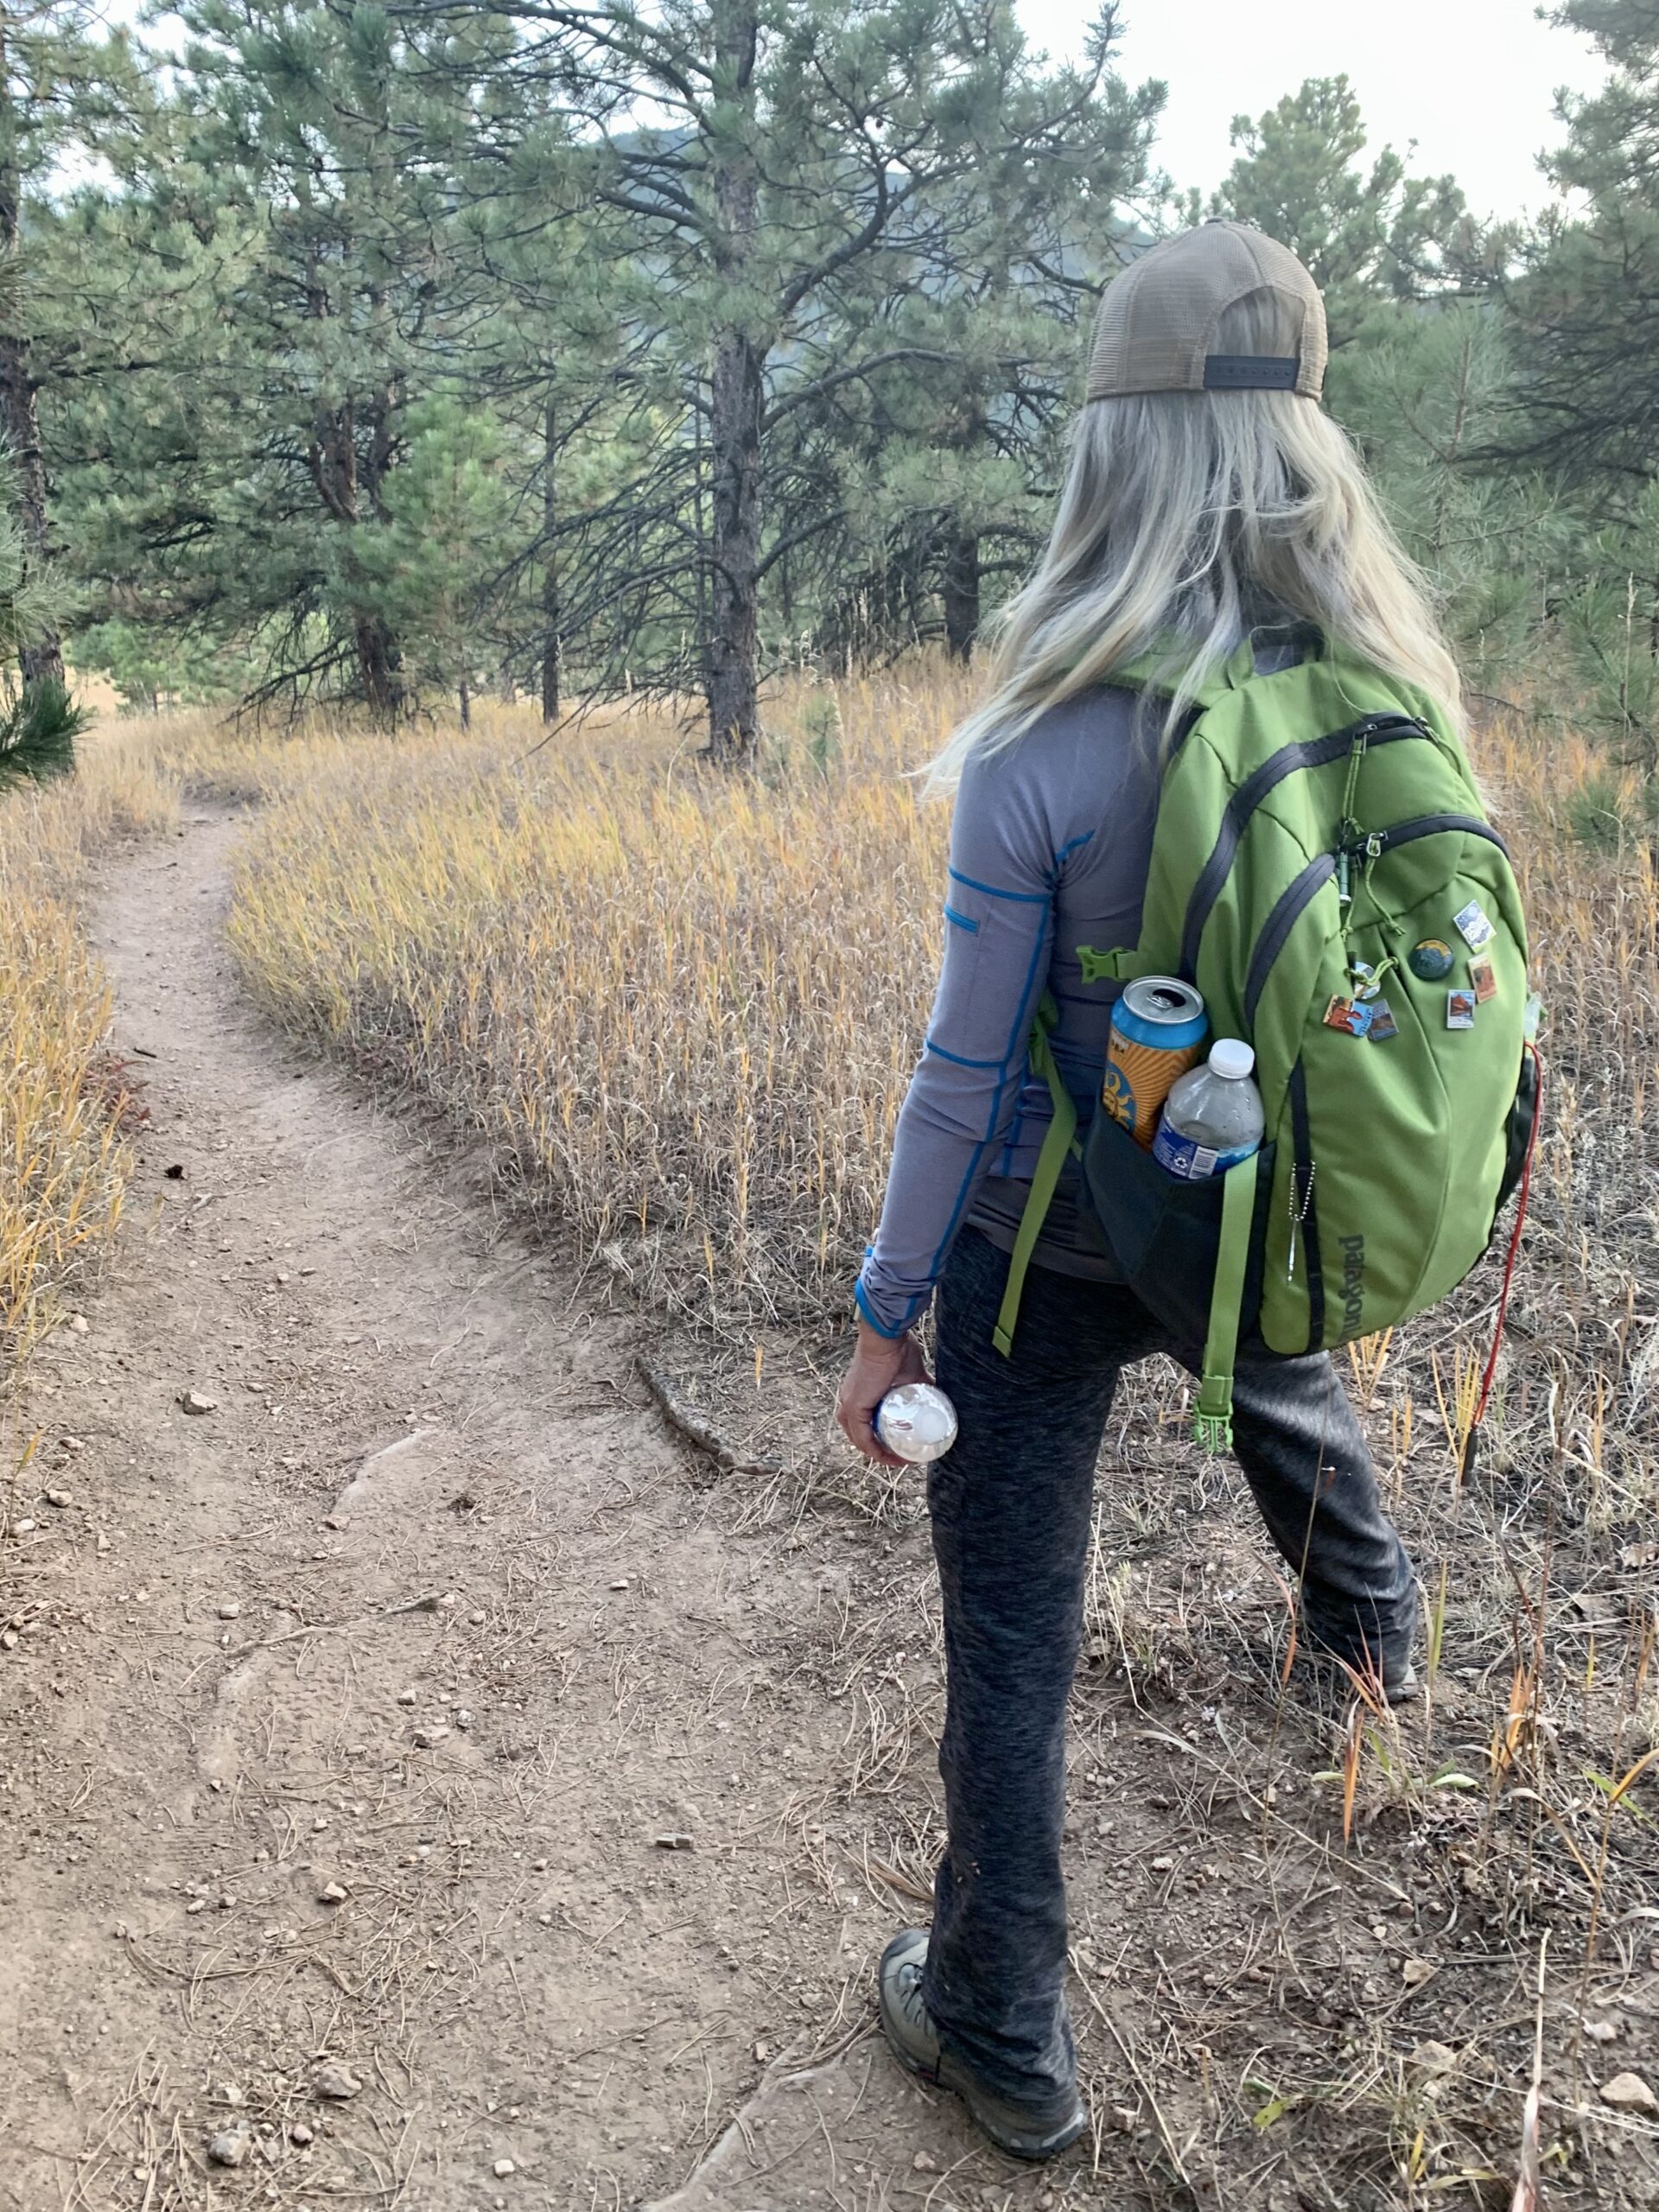 Julianne wearing her Salomon hiking boots in Colorado